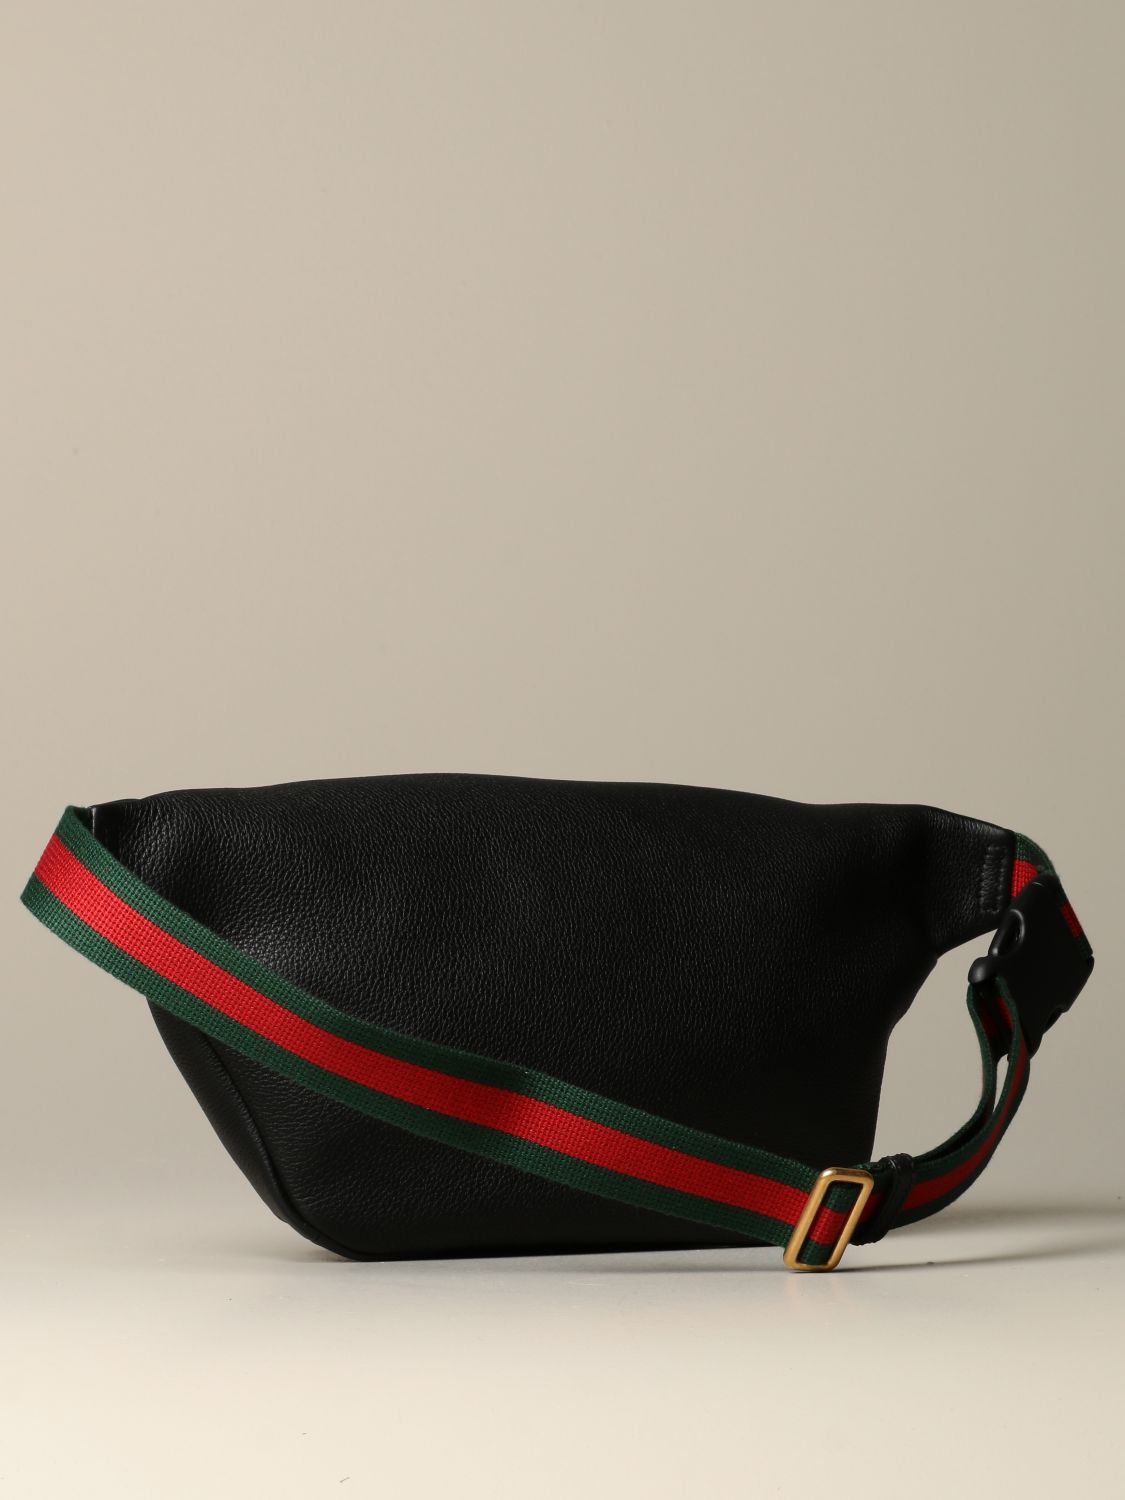 Gucci Men's Gucci Print Leather Belt Bag 530412 0GCCT 8822 888108989126 -  Handbags - Jomashop